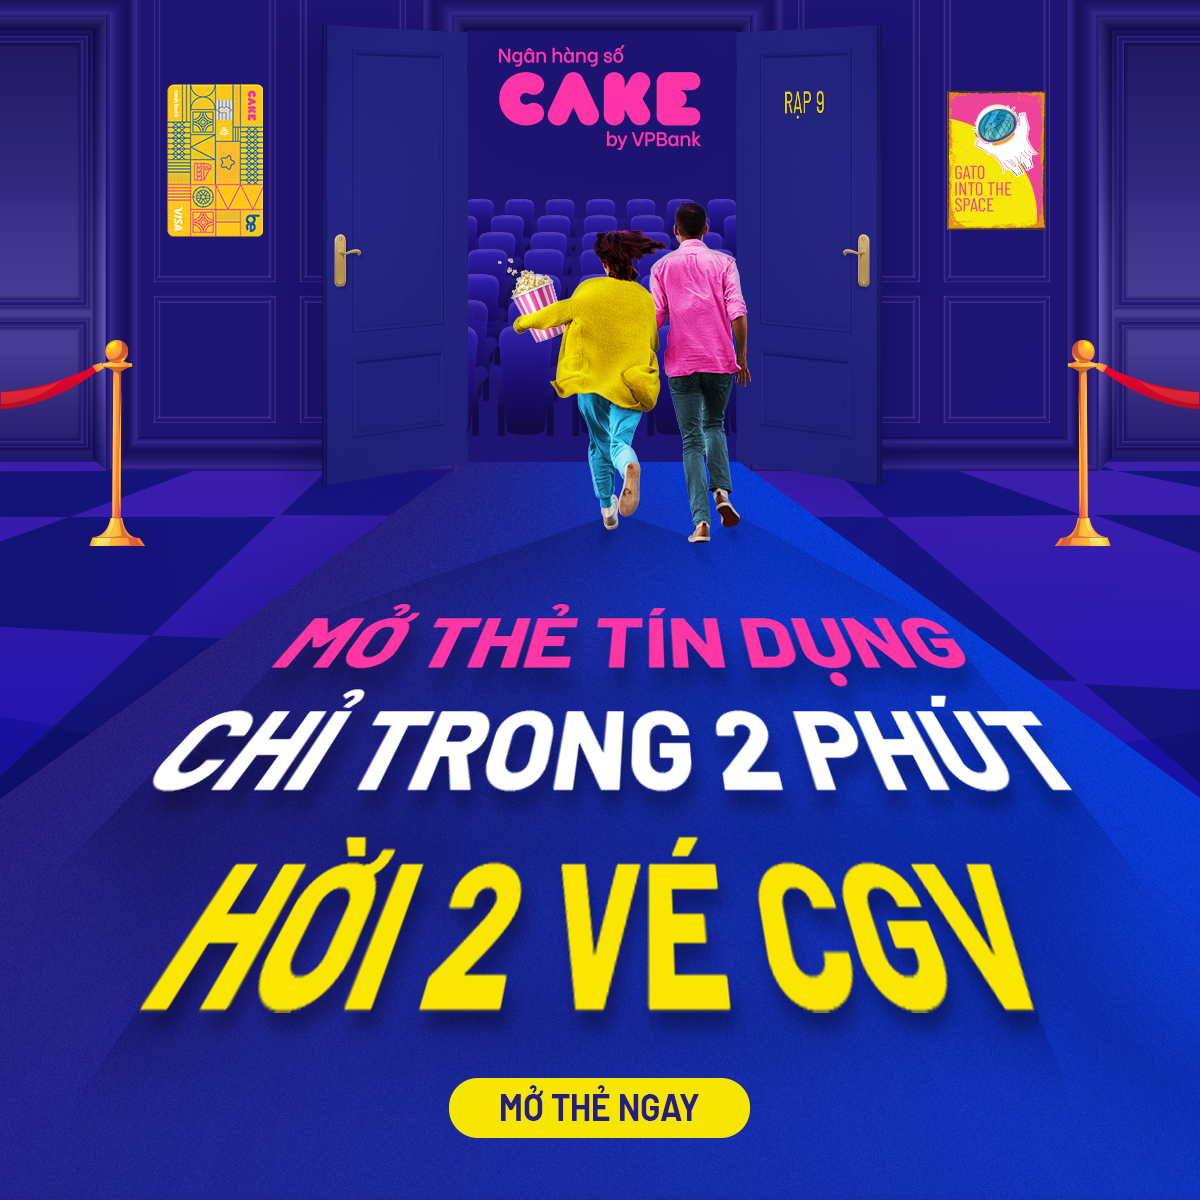 CGV Cinemas Vietnam  Tháng 8 này thành viên nào có sinh nhật nhớ ra CGV  xem phim và đổi quà nha Ưu đãi sinh nhật dành cho thành viên  U22